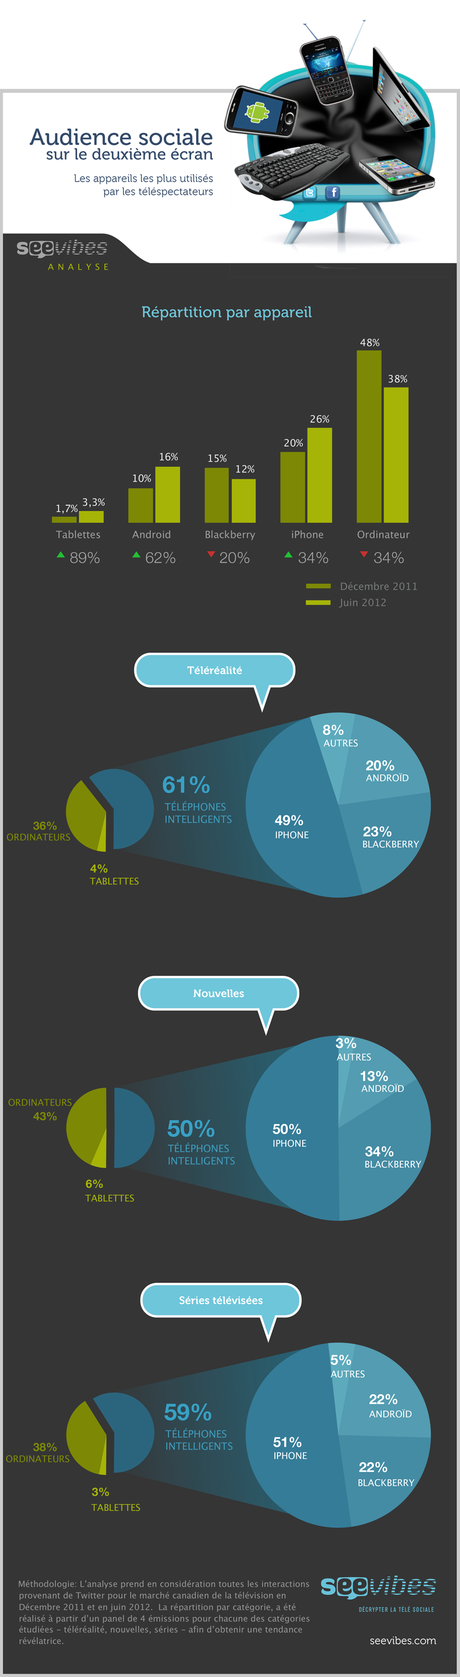 Distribution by Devices FR ZOOM Audience sociale: les plateformes les plus utilisées sur le deuxième écran [infographie]